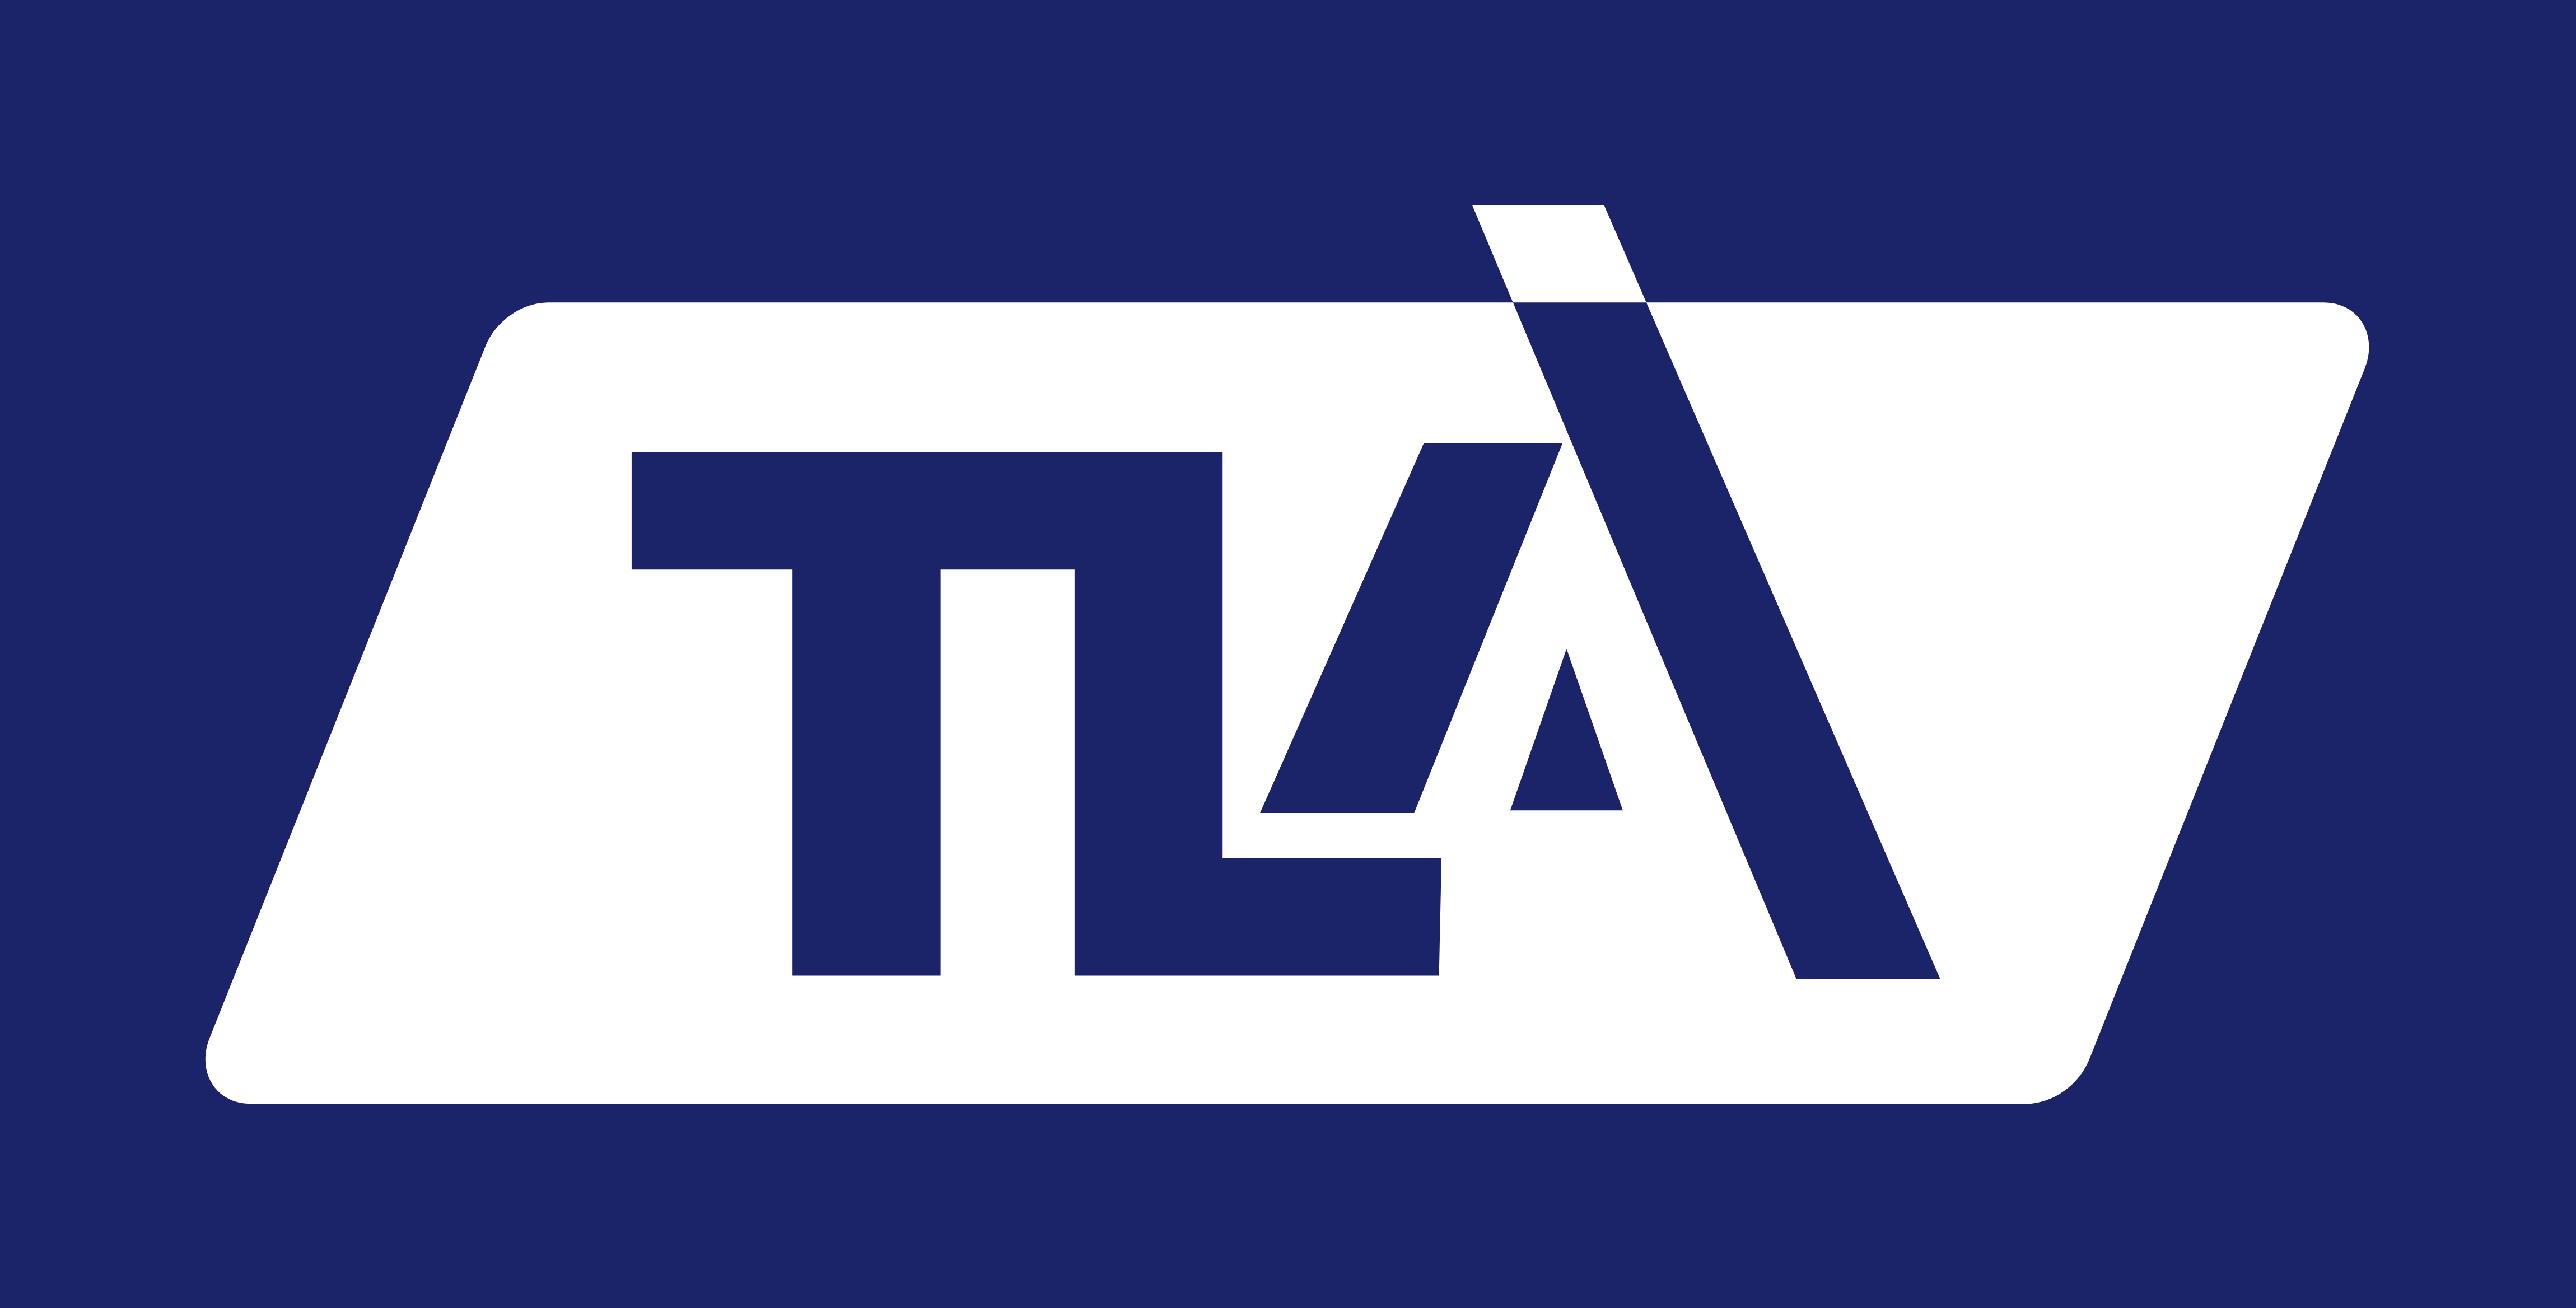 TLA Transport Logistik Akademie: Neues Aus- und Weiterbildungsunternehmen mit tiefgehender Fachkompetenz und praxisorientierten Lösungen für die Transport- und Logistikbranche